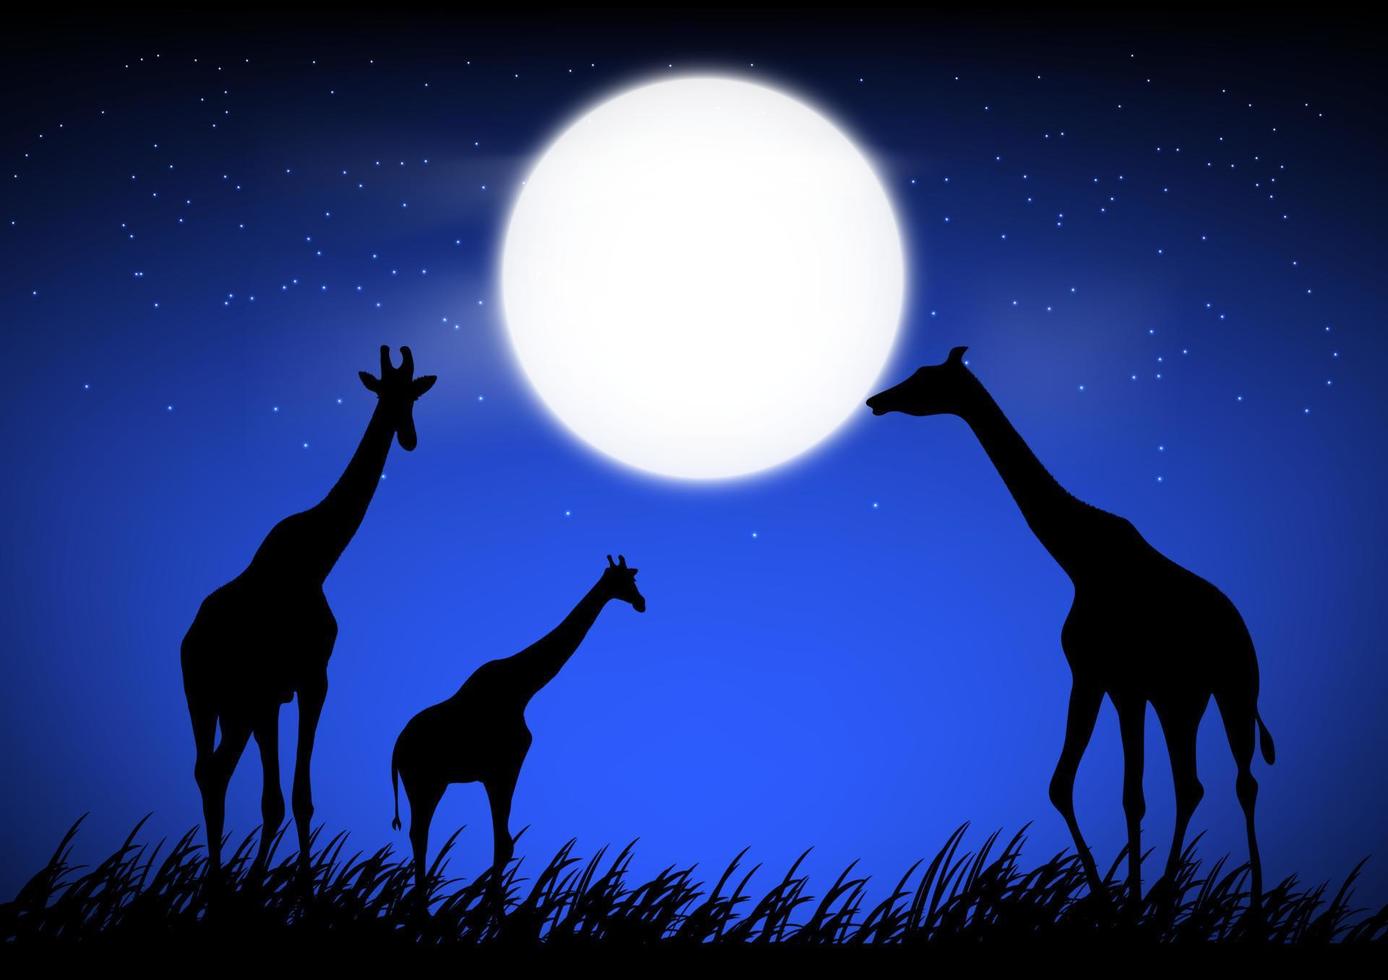 giraffa stan sull'erba nella foresta con sfondo lunare di notte grafica illustrazione vettoriale